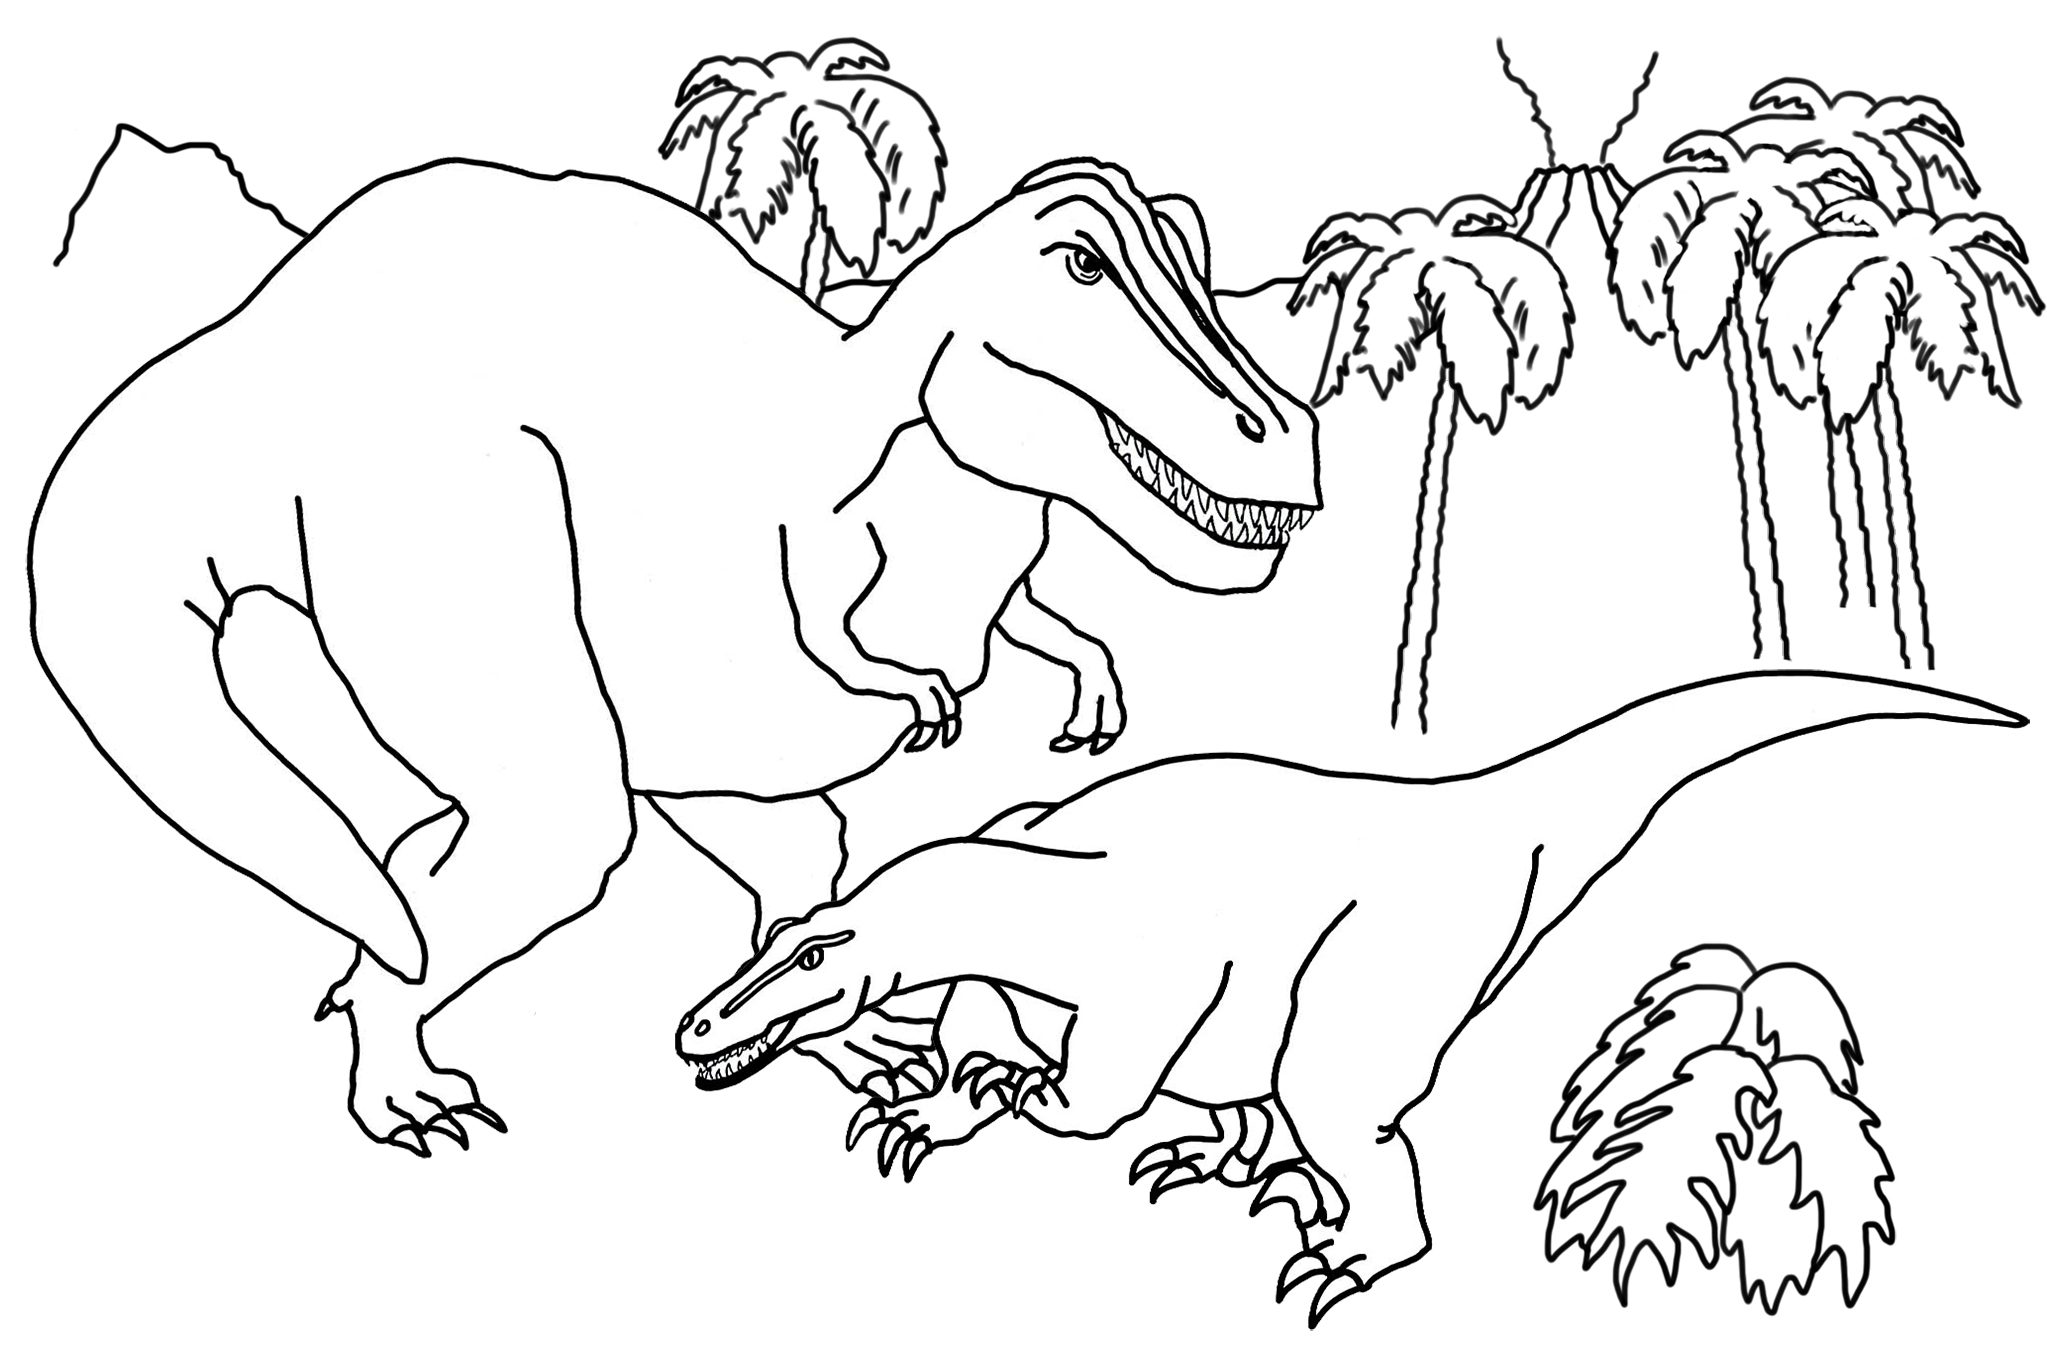 Раскраски динозавры формат а4. Динозавры / раскраска. Динозавр раскраска для детей. Раскраски для мальчиков динозавры. Раскраска "Динозаврики".